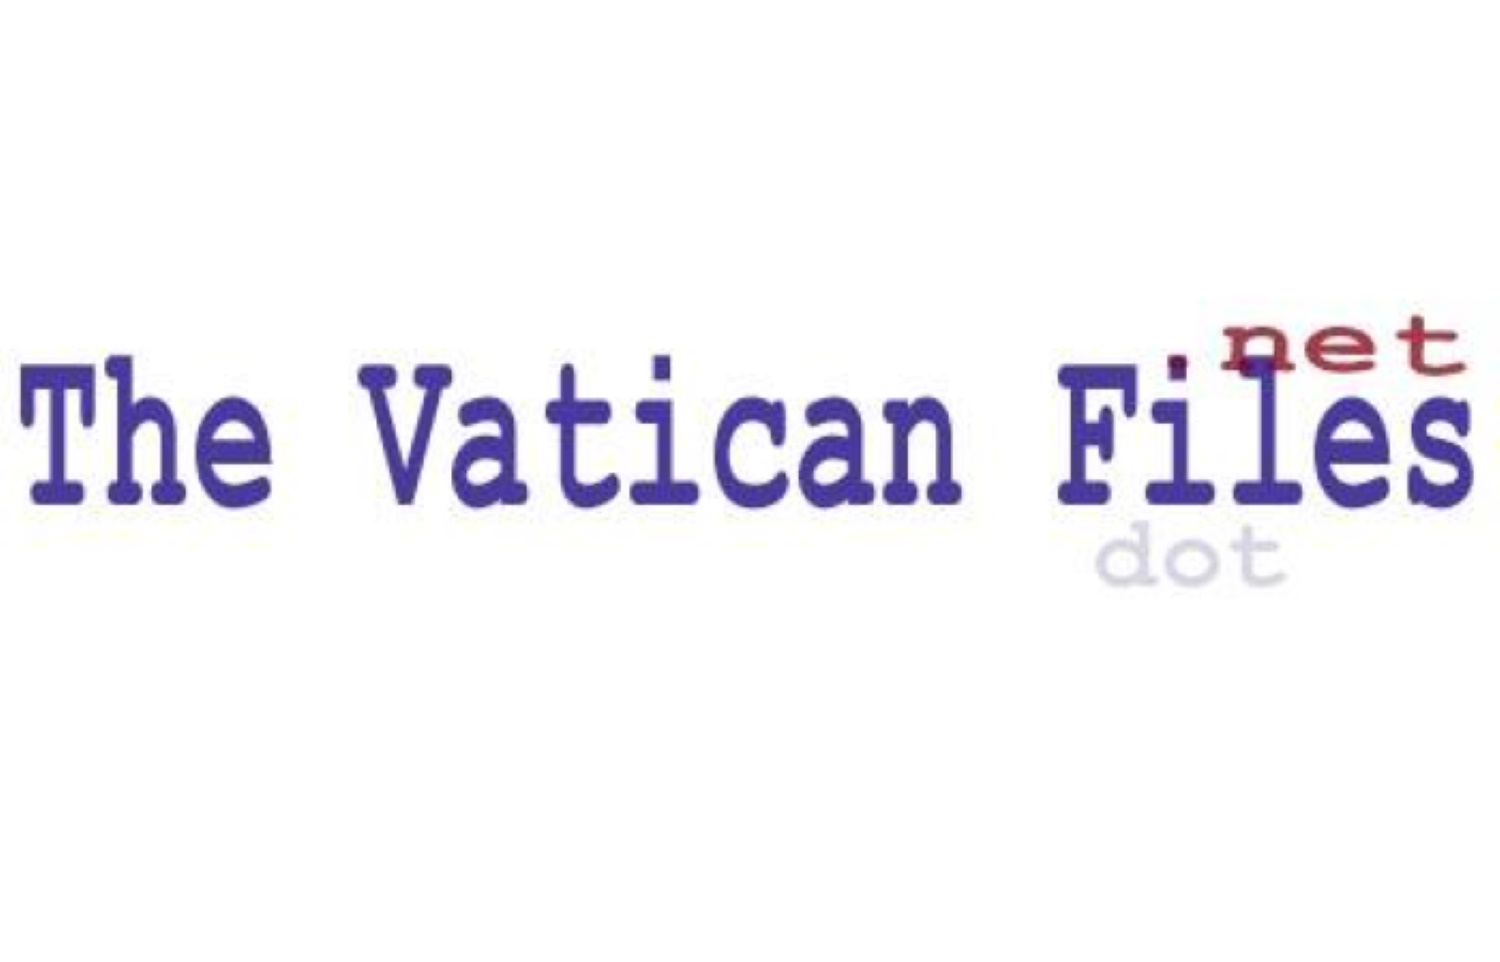 Il gesuita che inventò l'elicottero-   THE VATICAN FILES.NET  -      Storia - Testi - Documenti    